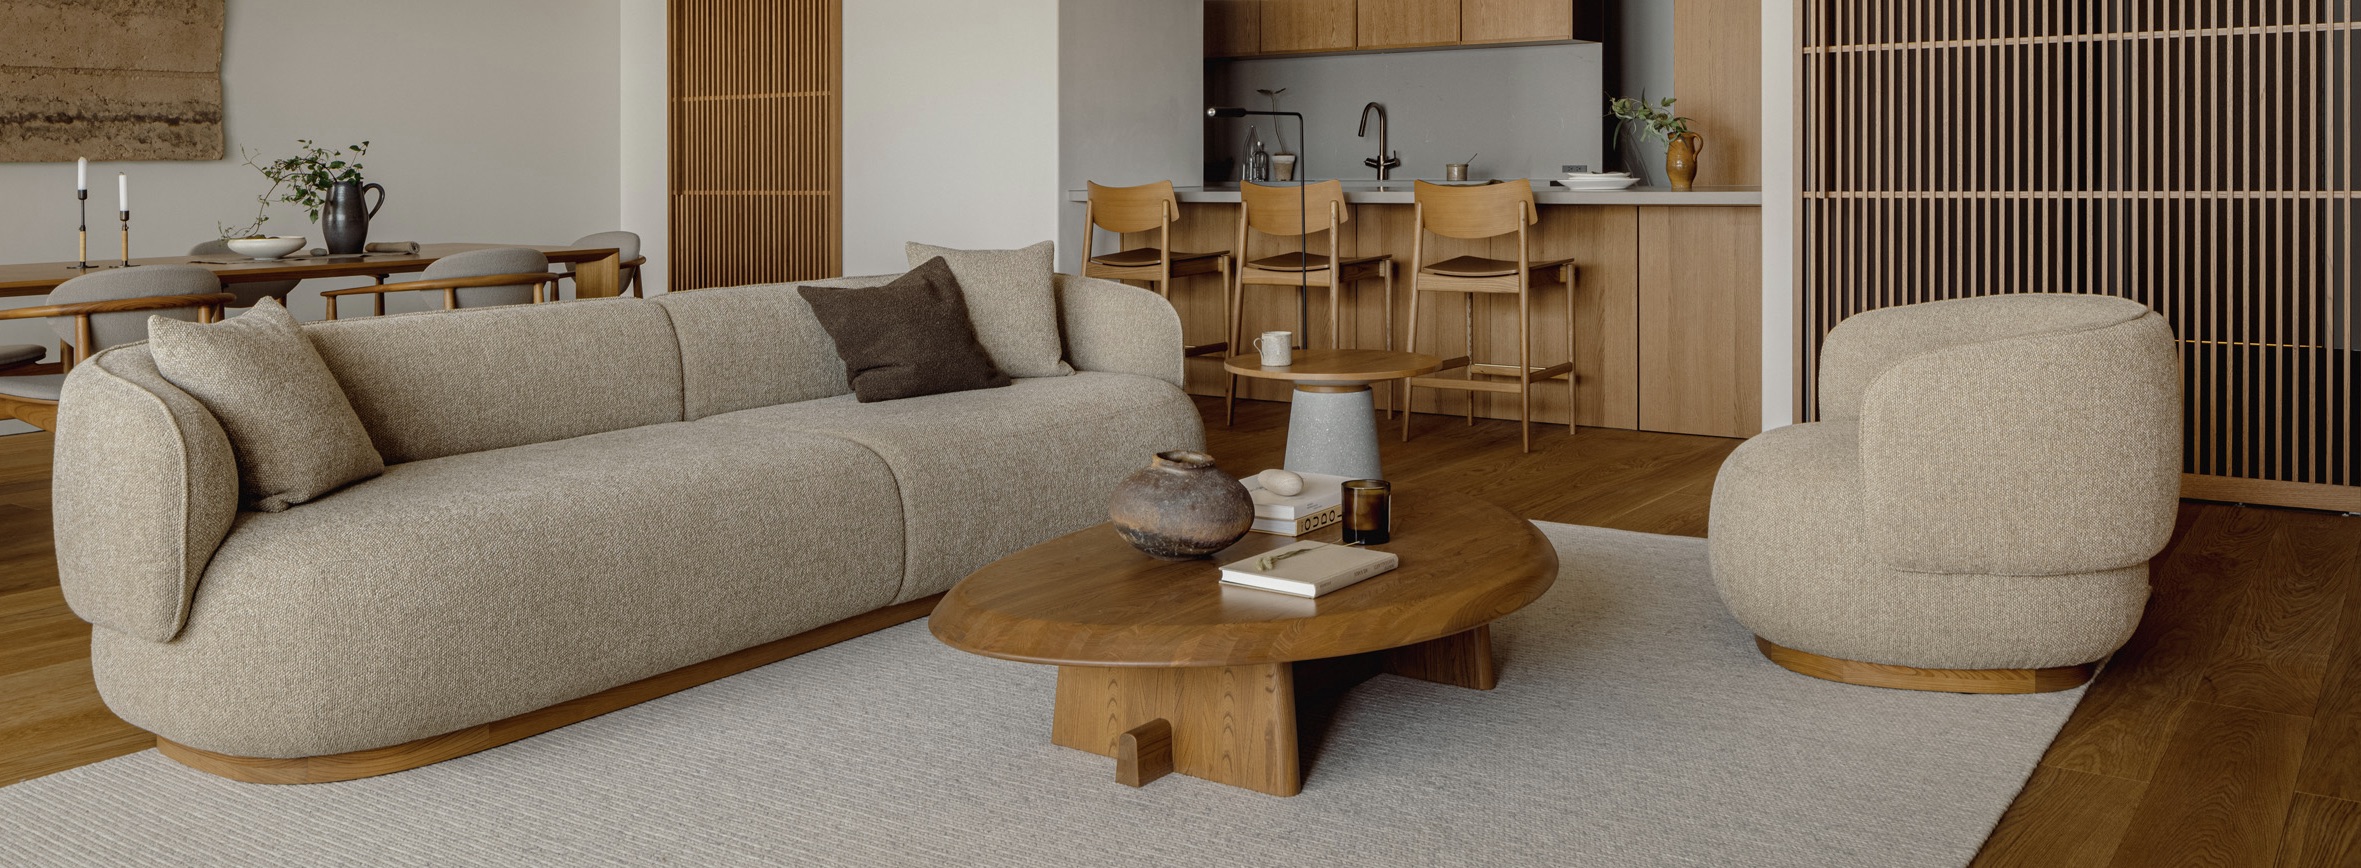 芦沢啓治がオパス有栖川のデザインに込めた、Crafted Homeの思想